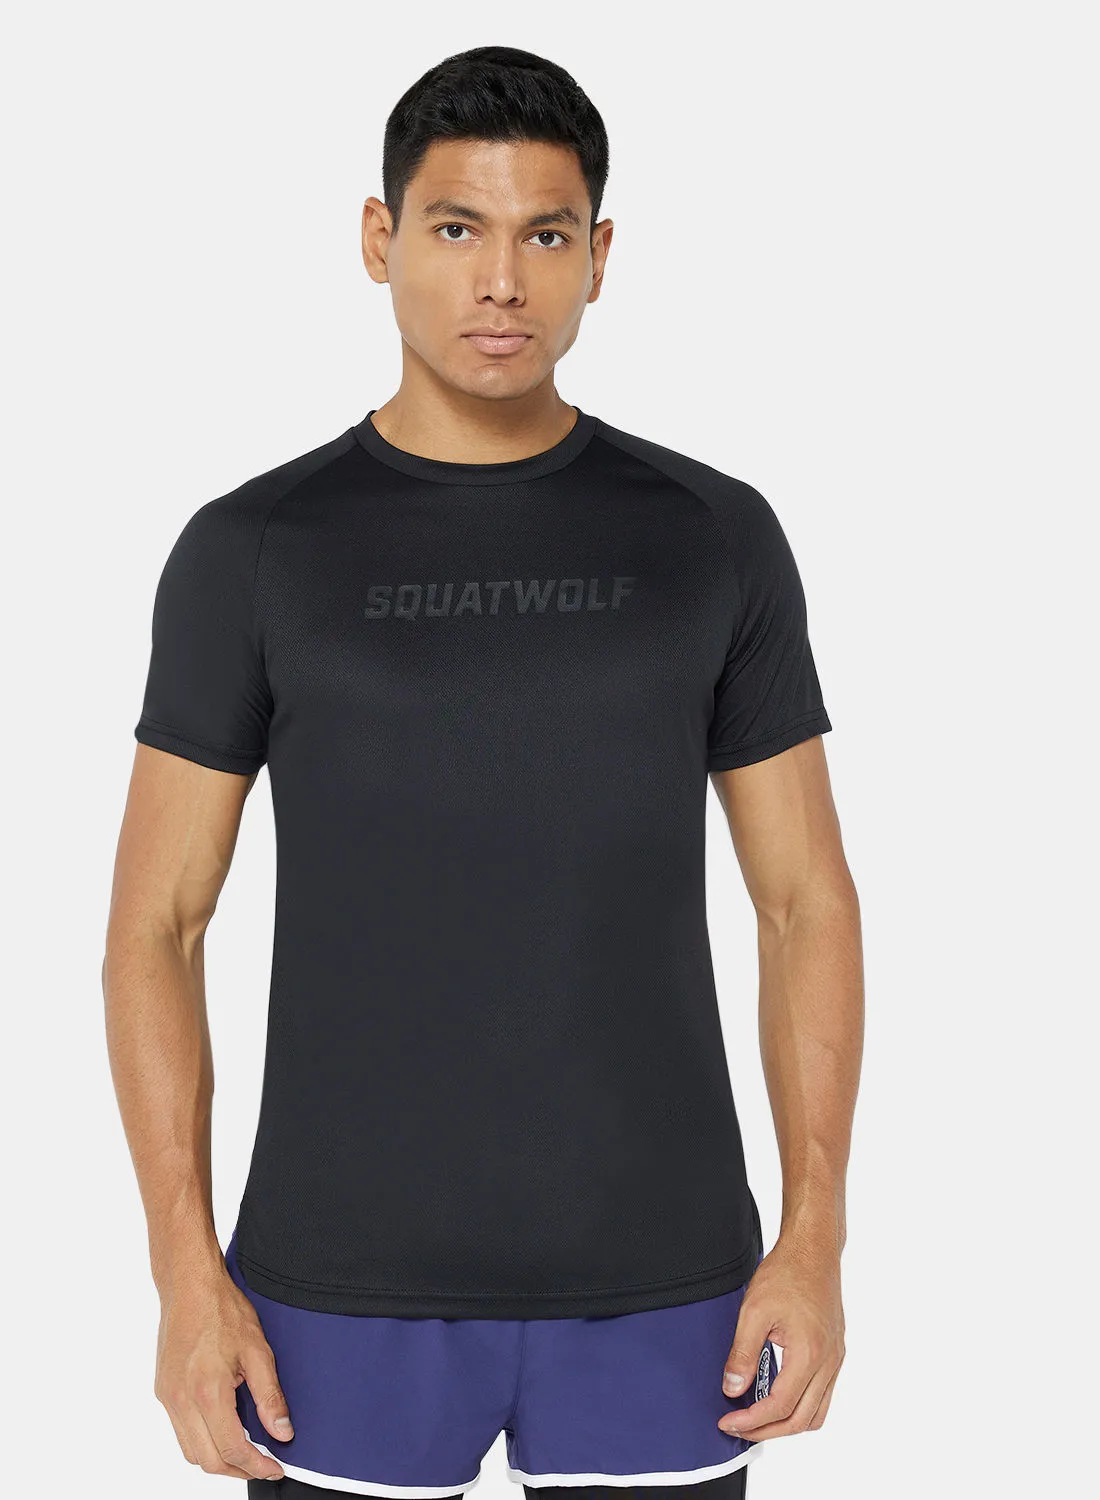 SQUATWOLF LAB360º Recycled Mesh T-Shirt